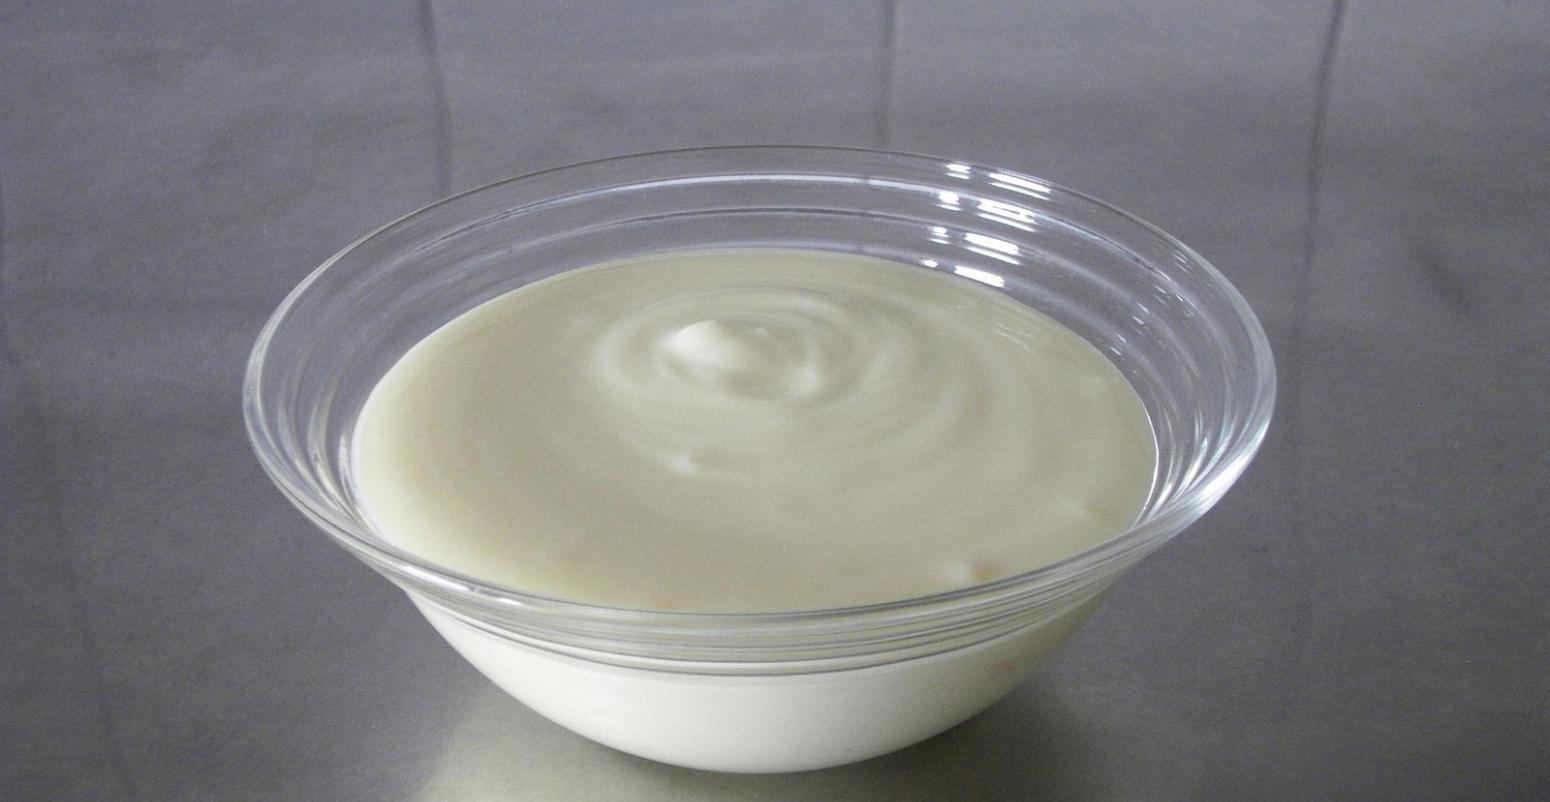 新研究表明酸奶、泡菜和酸菜等发酵食品可通过增加肠道细菌多样性来帮助降低体内炎症